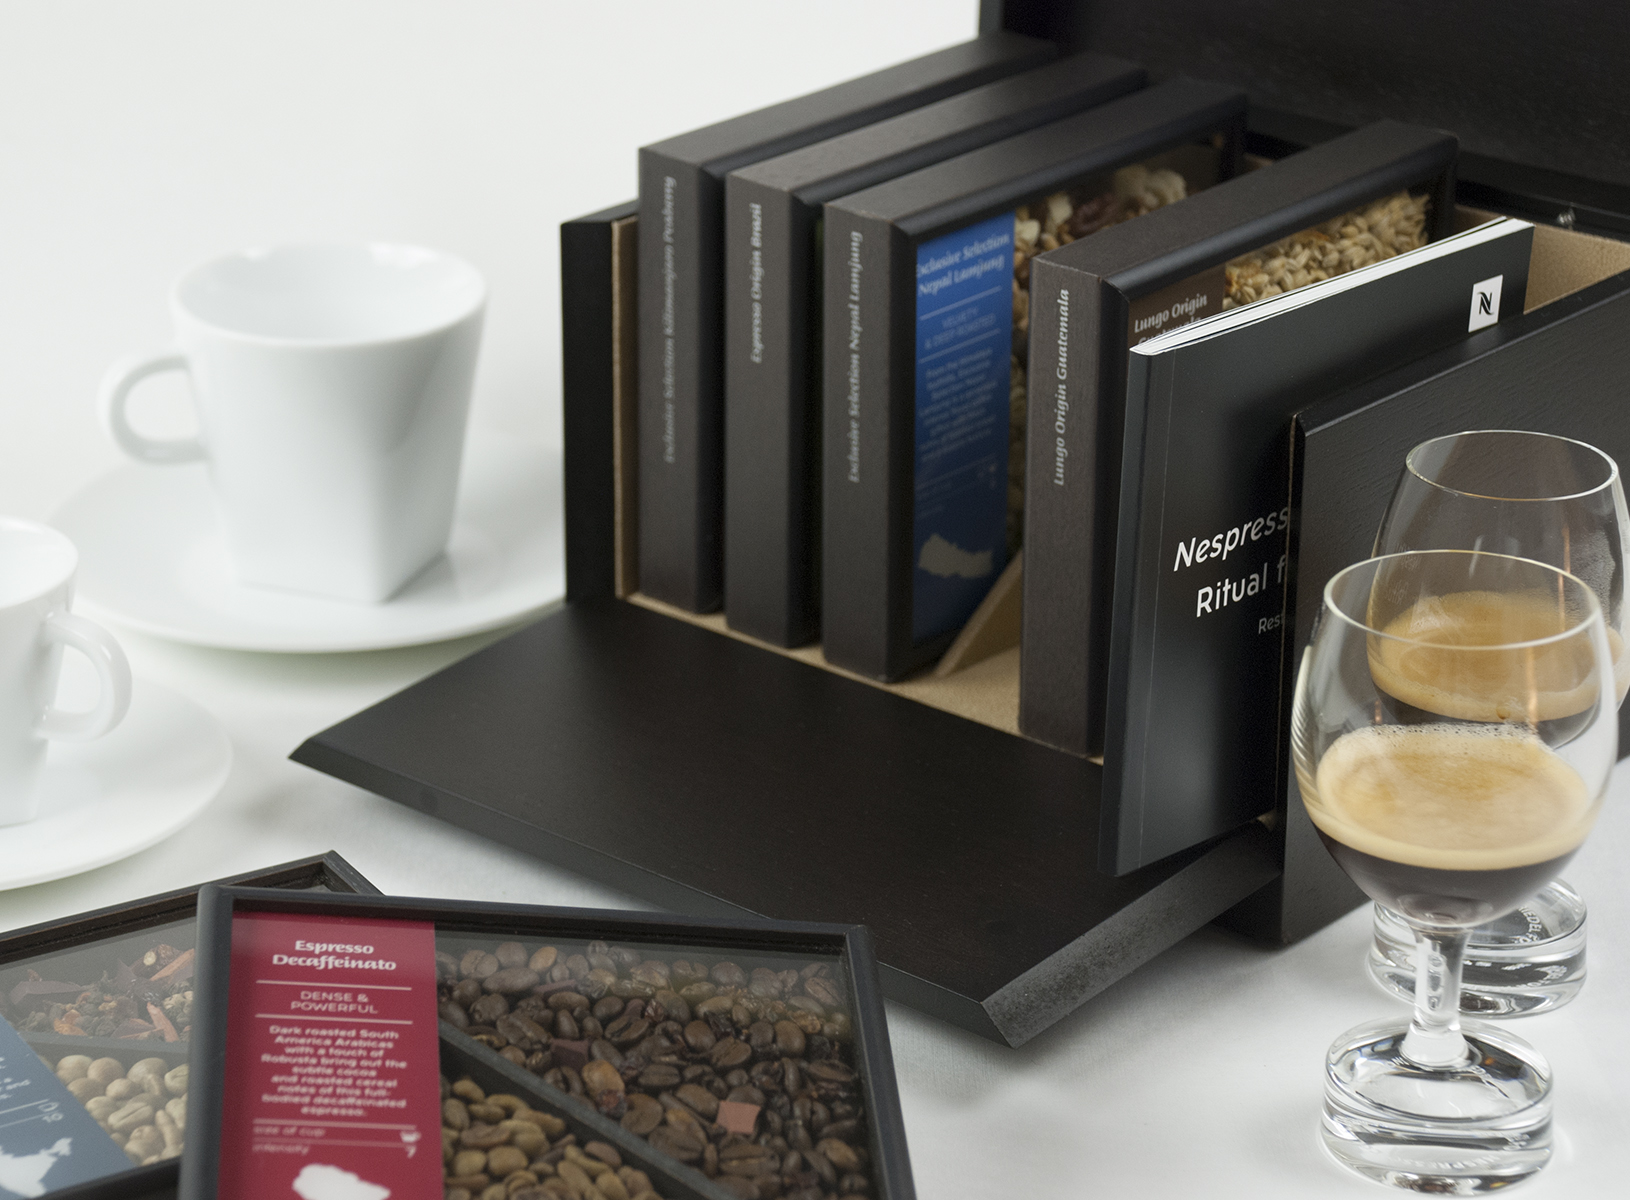 nespresso fine dinning box, boîte et cadre café, packaging design, dégustation et collection de café grands crus. chloé genet chloegenet.ch